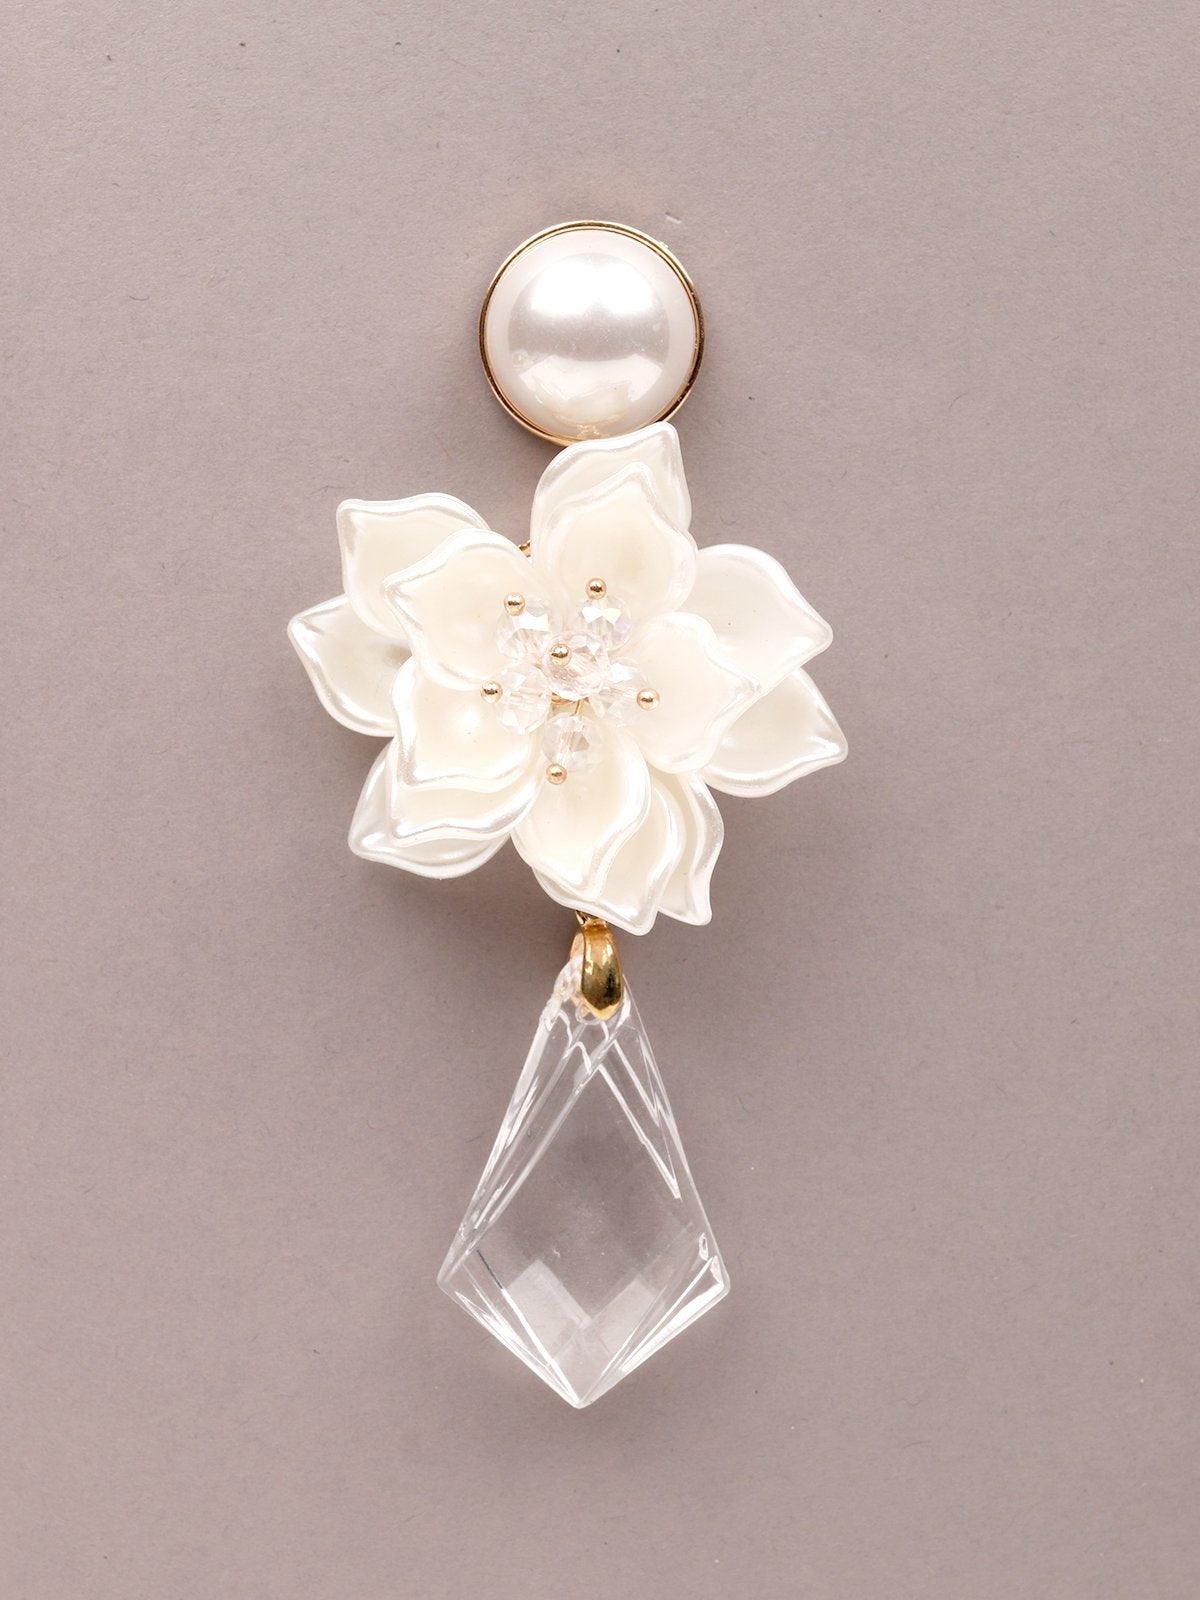 Women's White Floral Earrings With A Drop Of Clear Teardrop Bead. - Odette